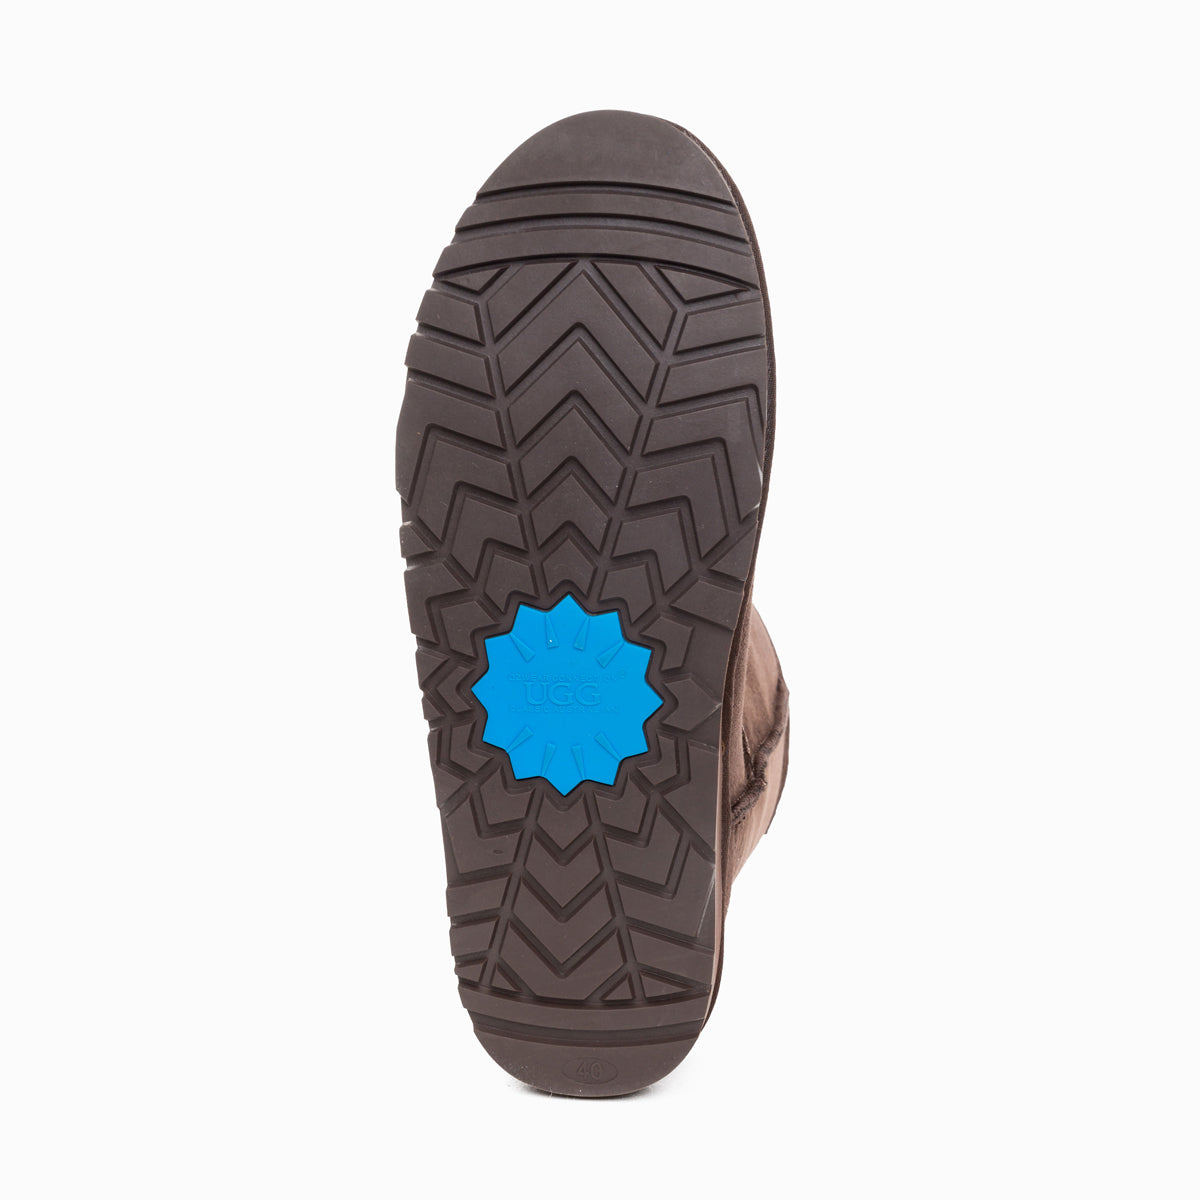 Ugg Mens Classic Short Boots-Boots-PEROZ Accessories